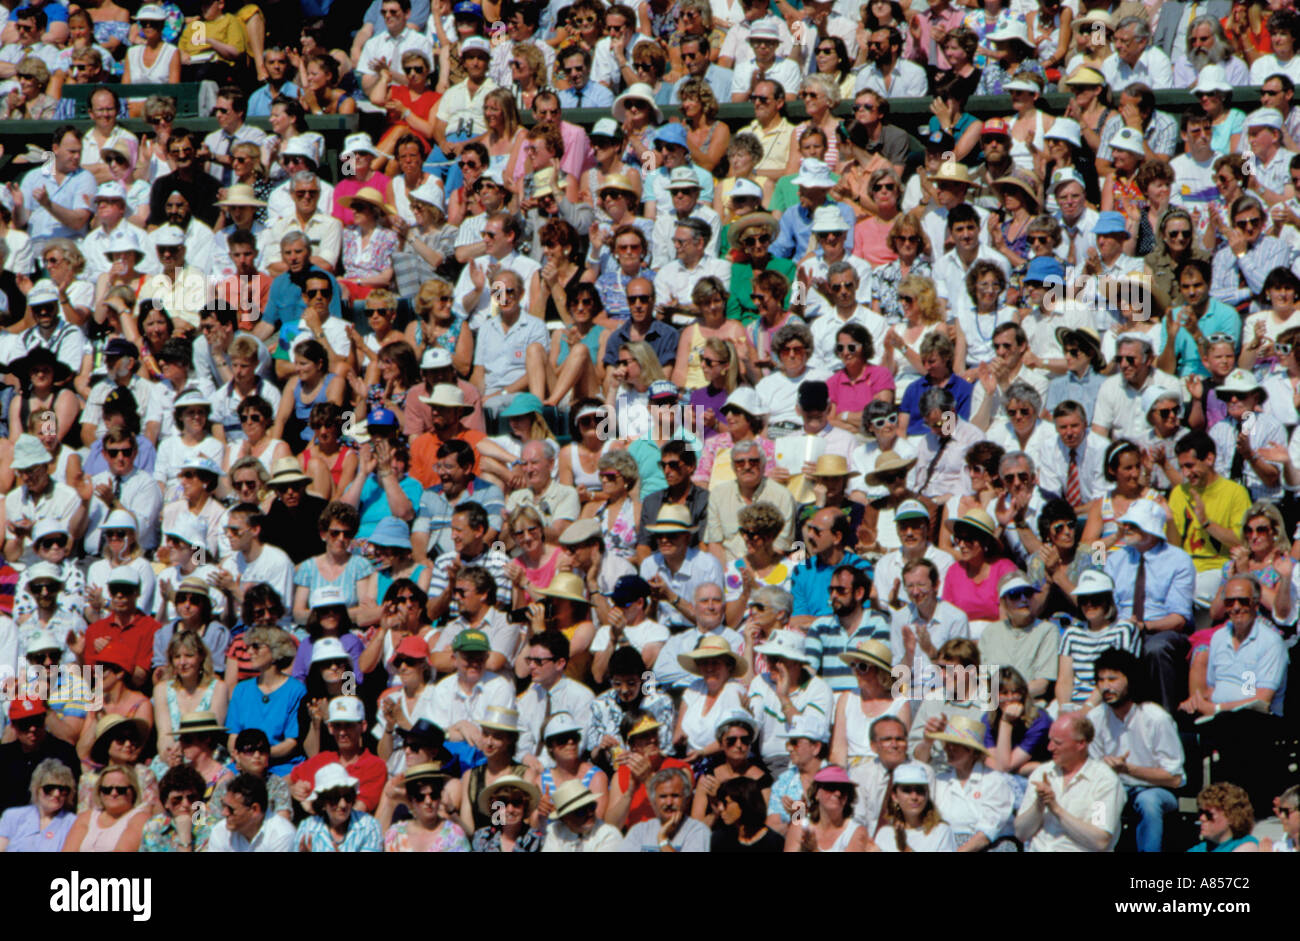 Foule de gens qui regardent un match de tennis, Wimbledon, Surrey, Angleterre, Royaume-Uni. Banque D'Images